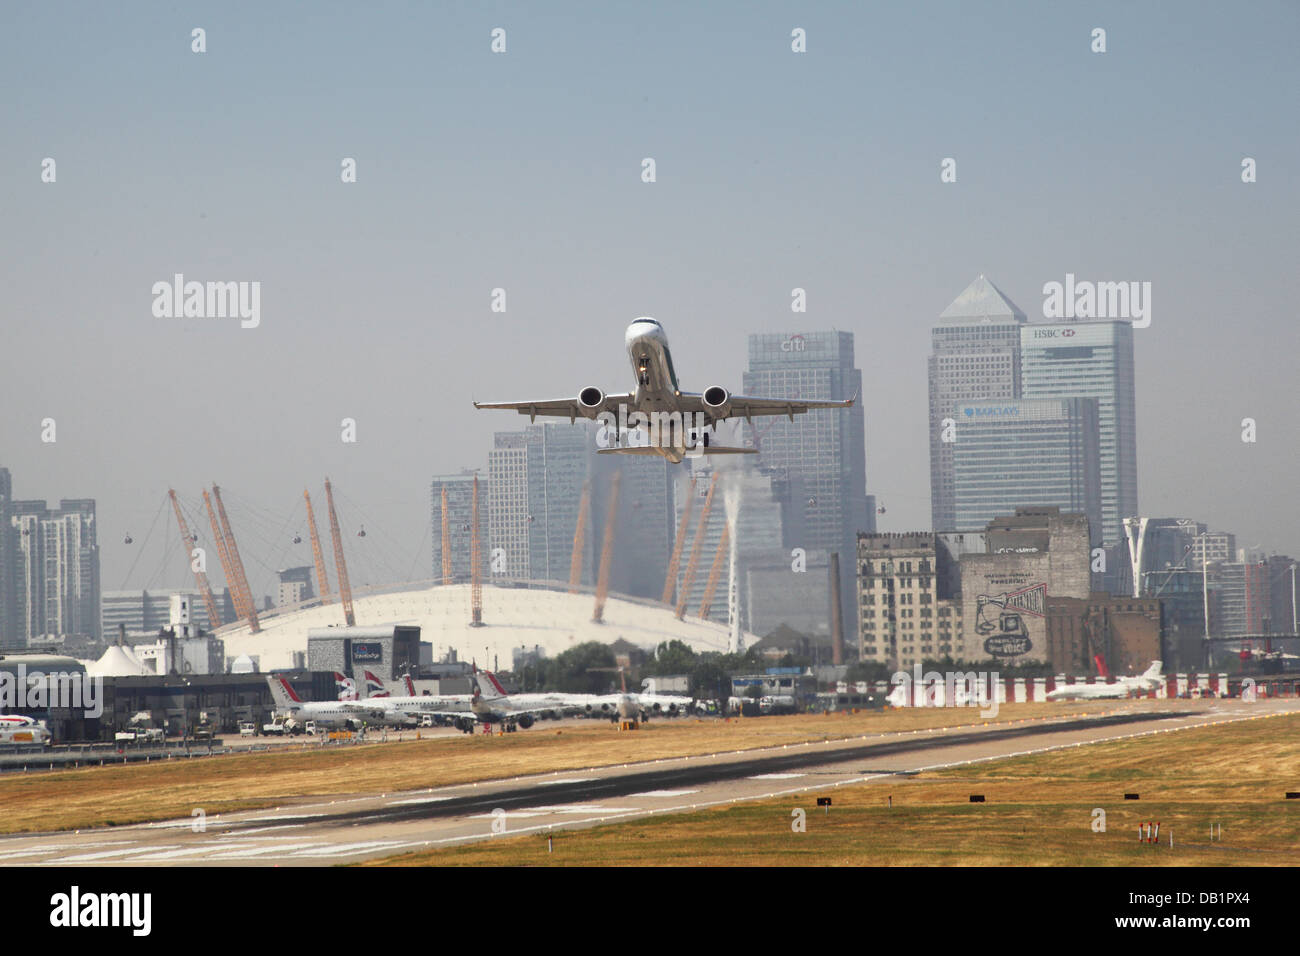 Un jet de passagers décolle de l'aéroport de London City avec Canary Wharf et le dôme du millénaire en arrière-plan Banque D'Images